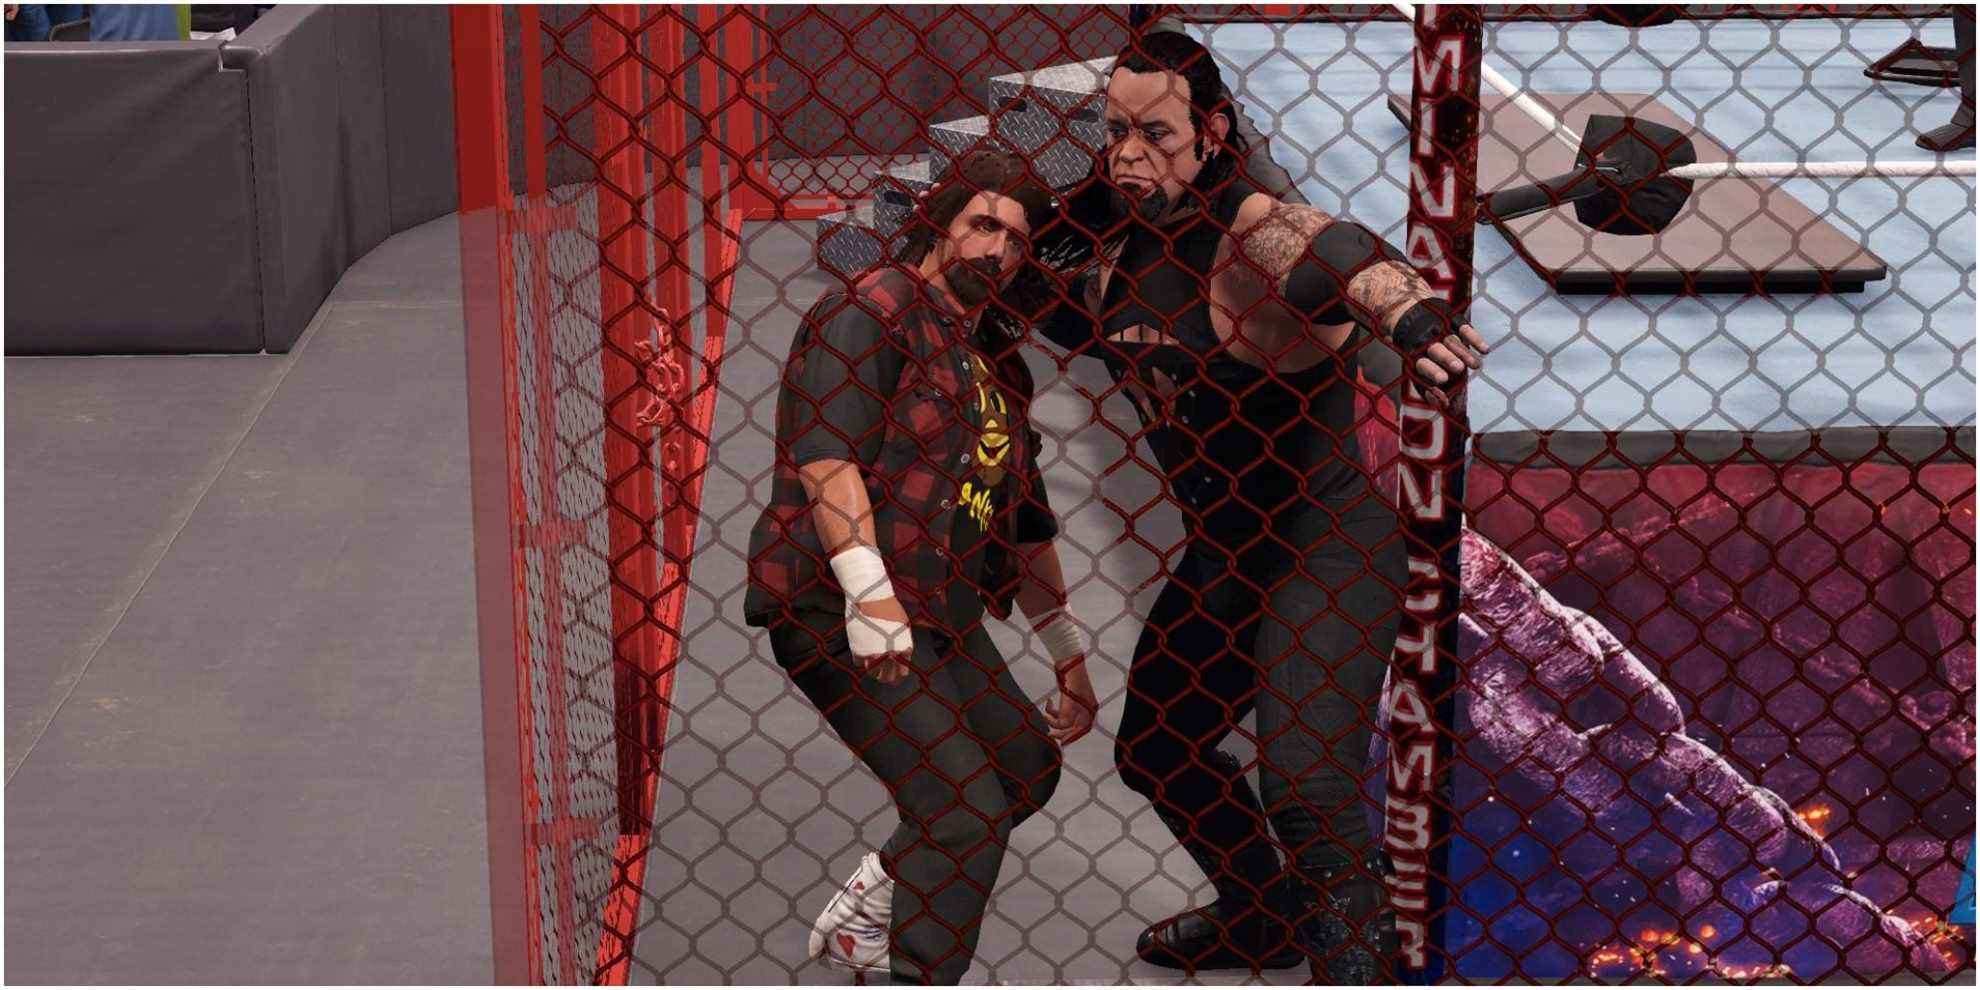   Undertaker fracassant la tête de Foley dans la cage